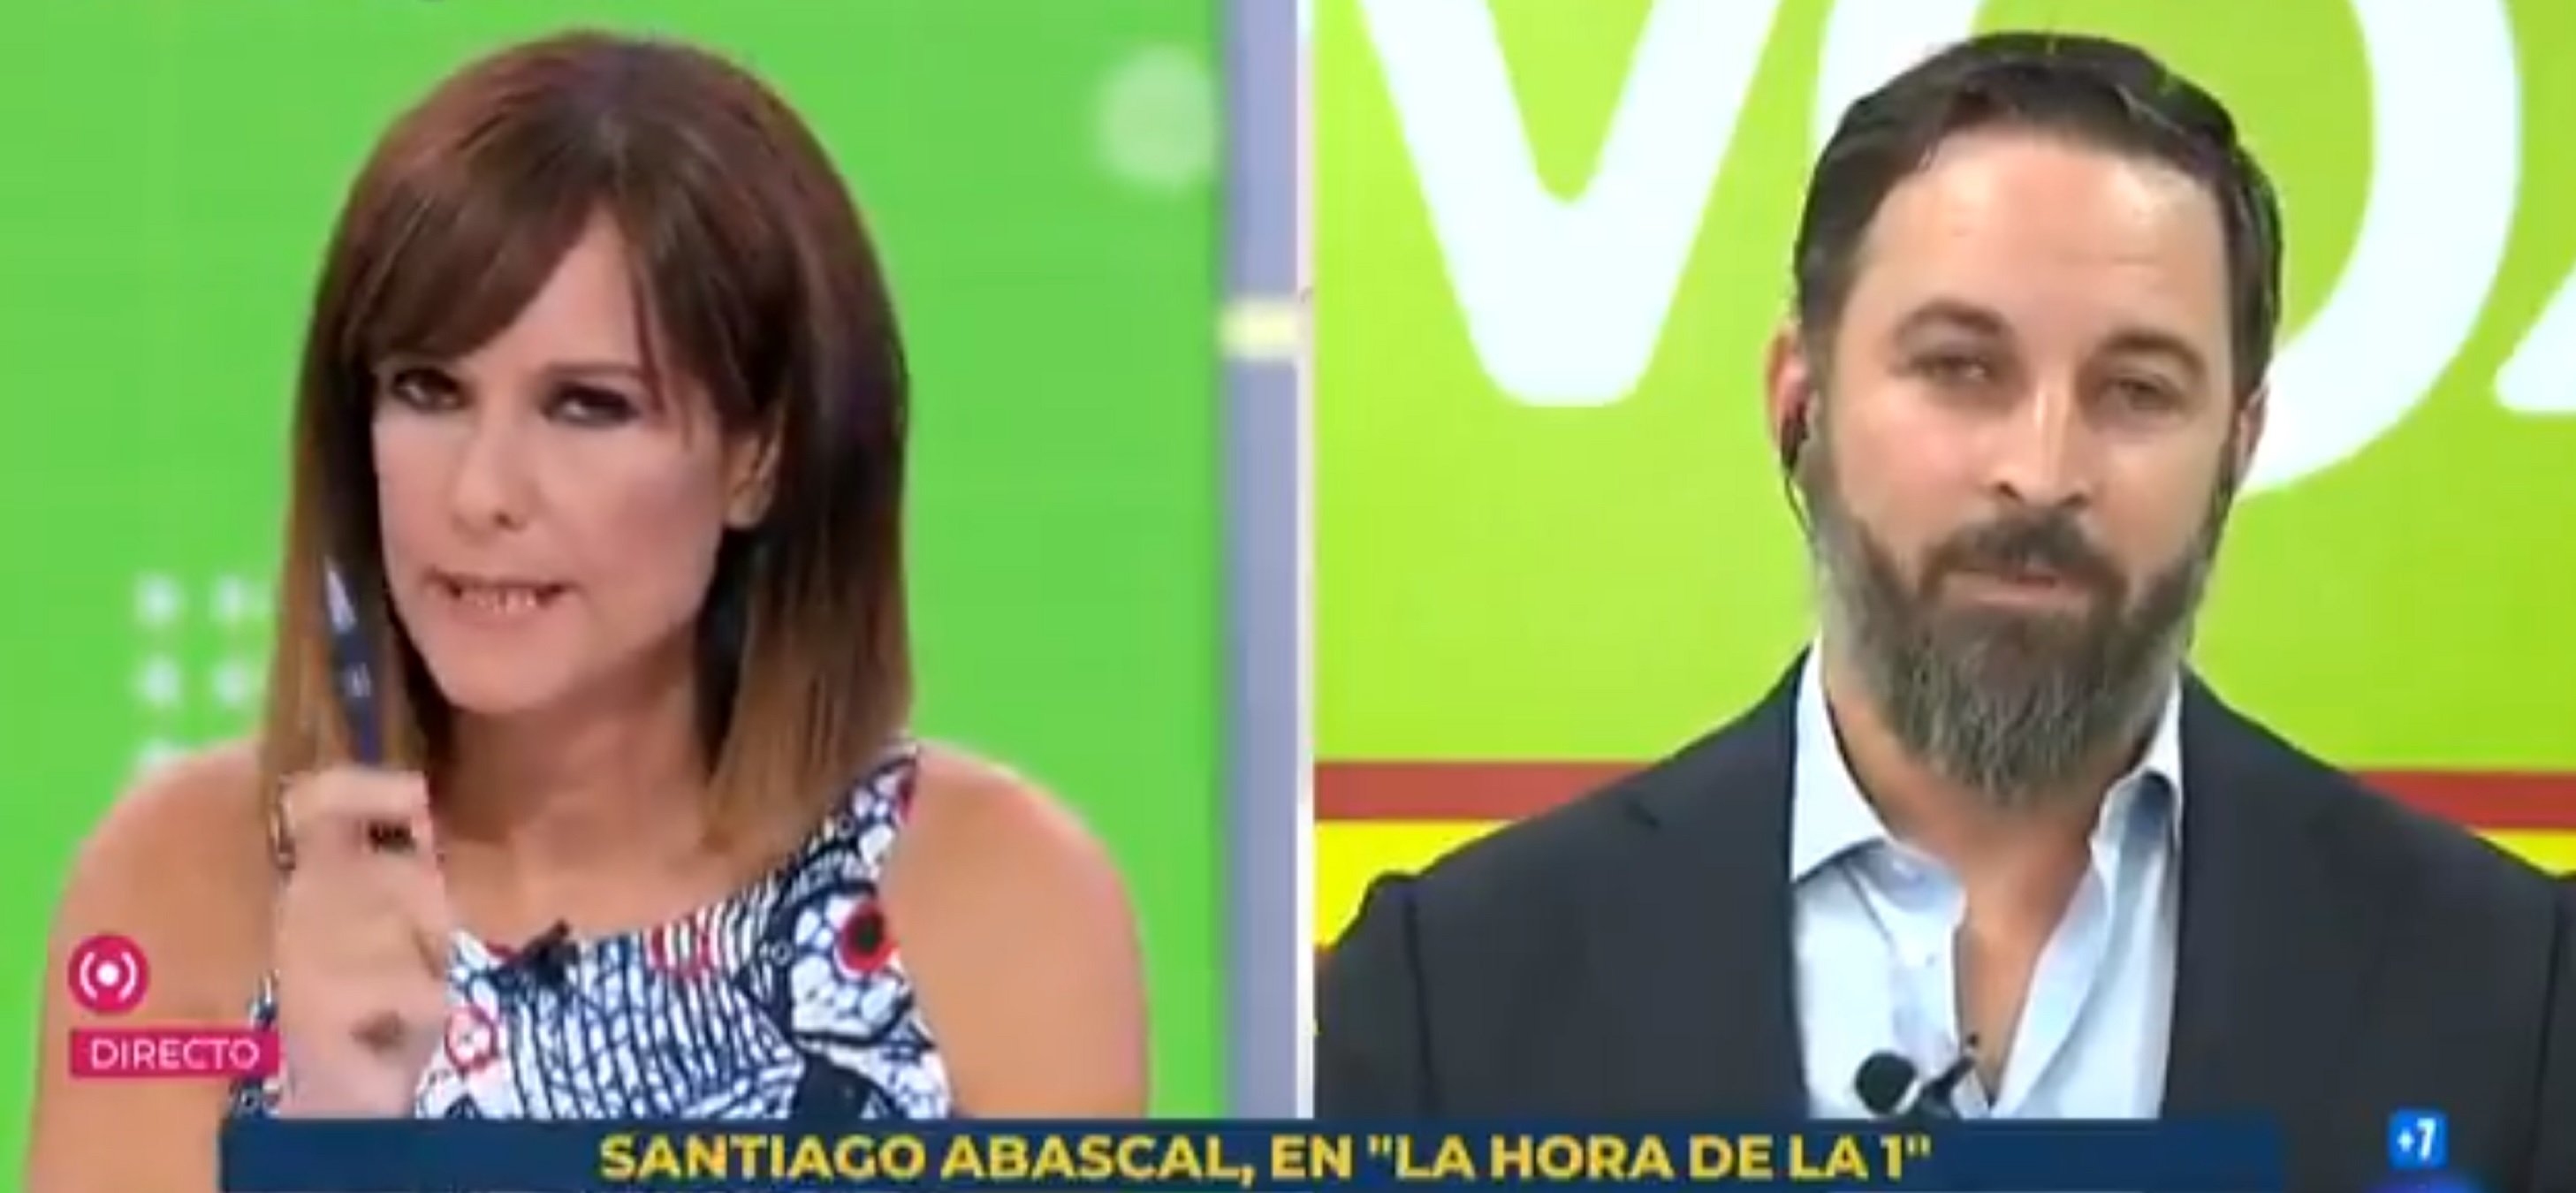 Santiago Abascal xuleja Mónica López en directe: "No les riña", "No contesto"